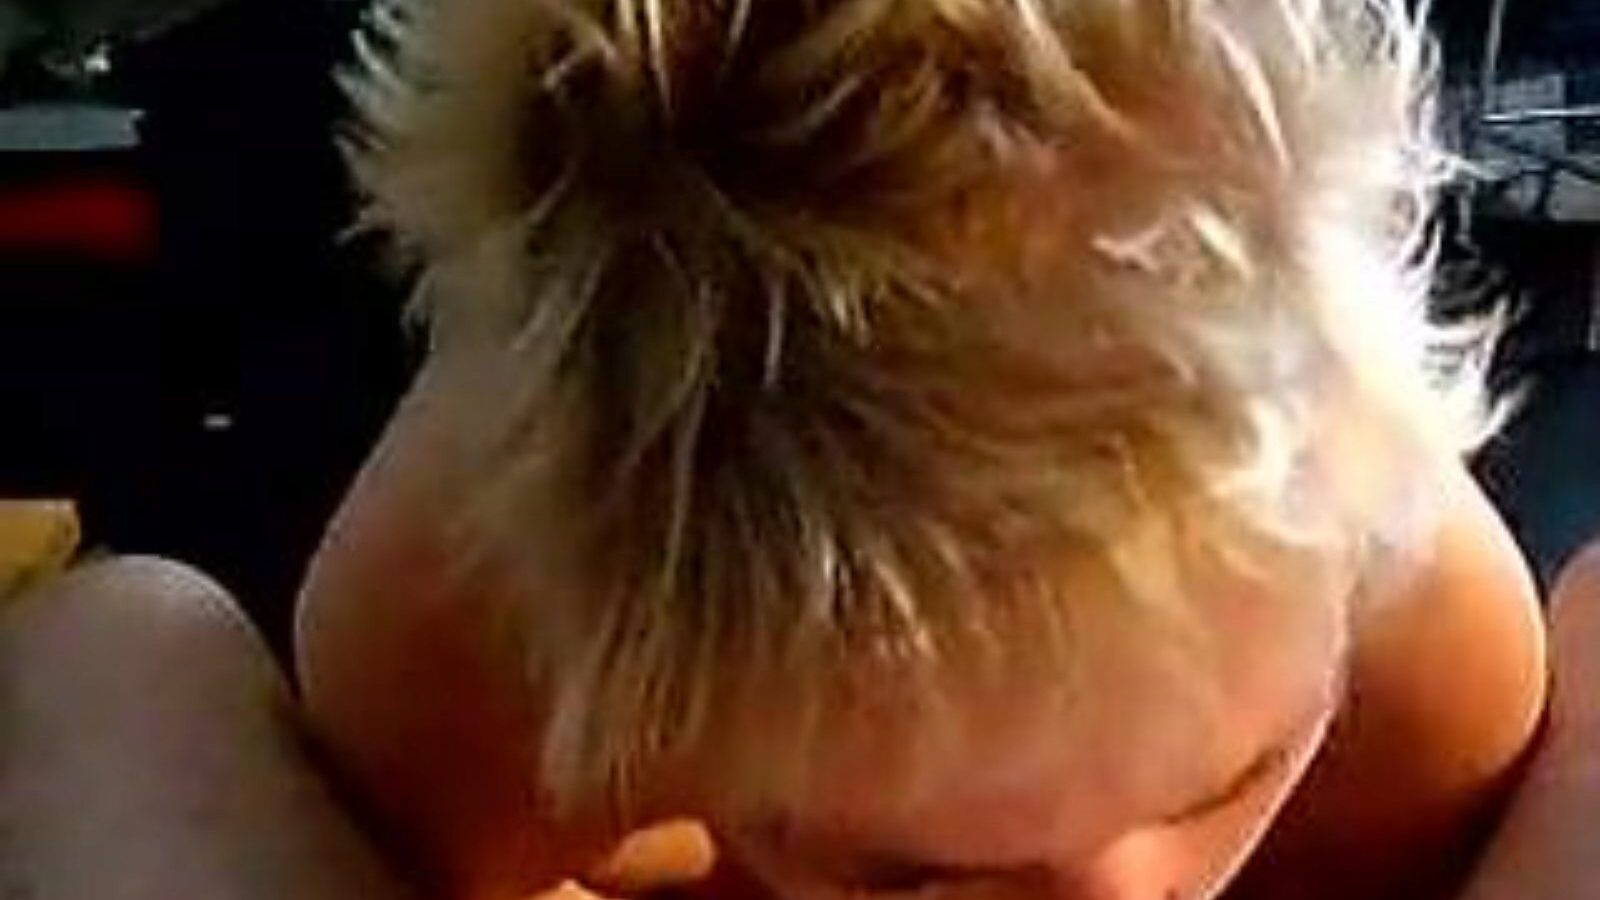 leuke dame: vídeo pornô caseiro e velha para garotas a6 - xhamster assista ao filme de leuke dame tube fuckfest gratuitamente no xhamster, com a coleção mais quente de vídeos caseiros holandeses, de velha e de pornografia sugadora